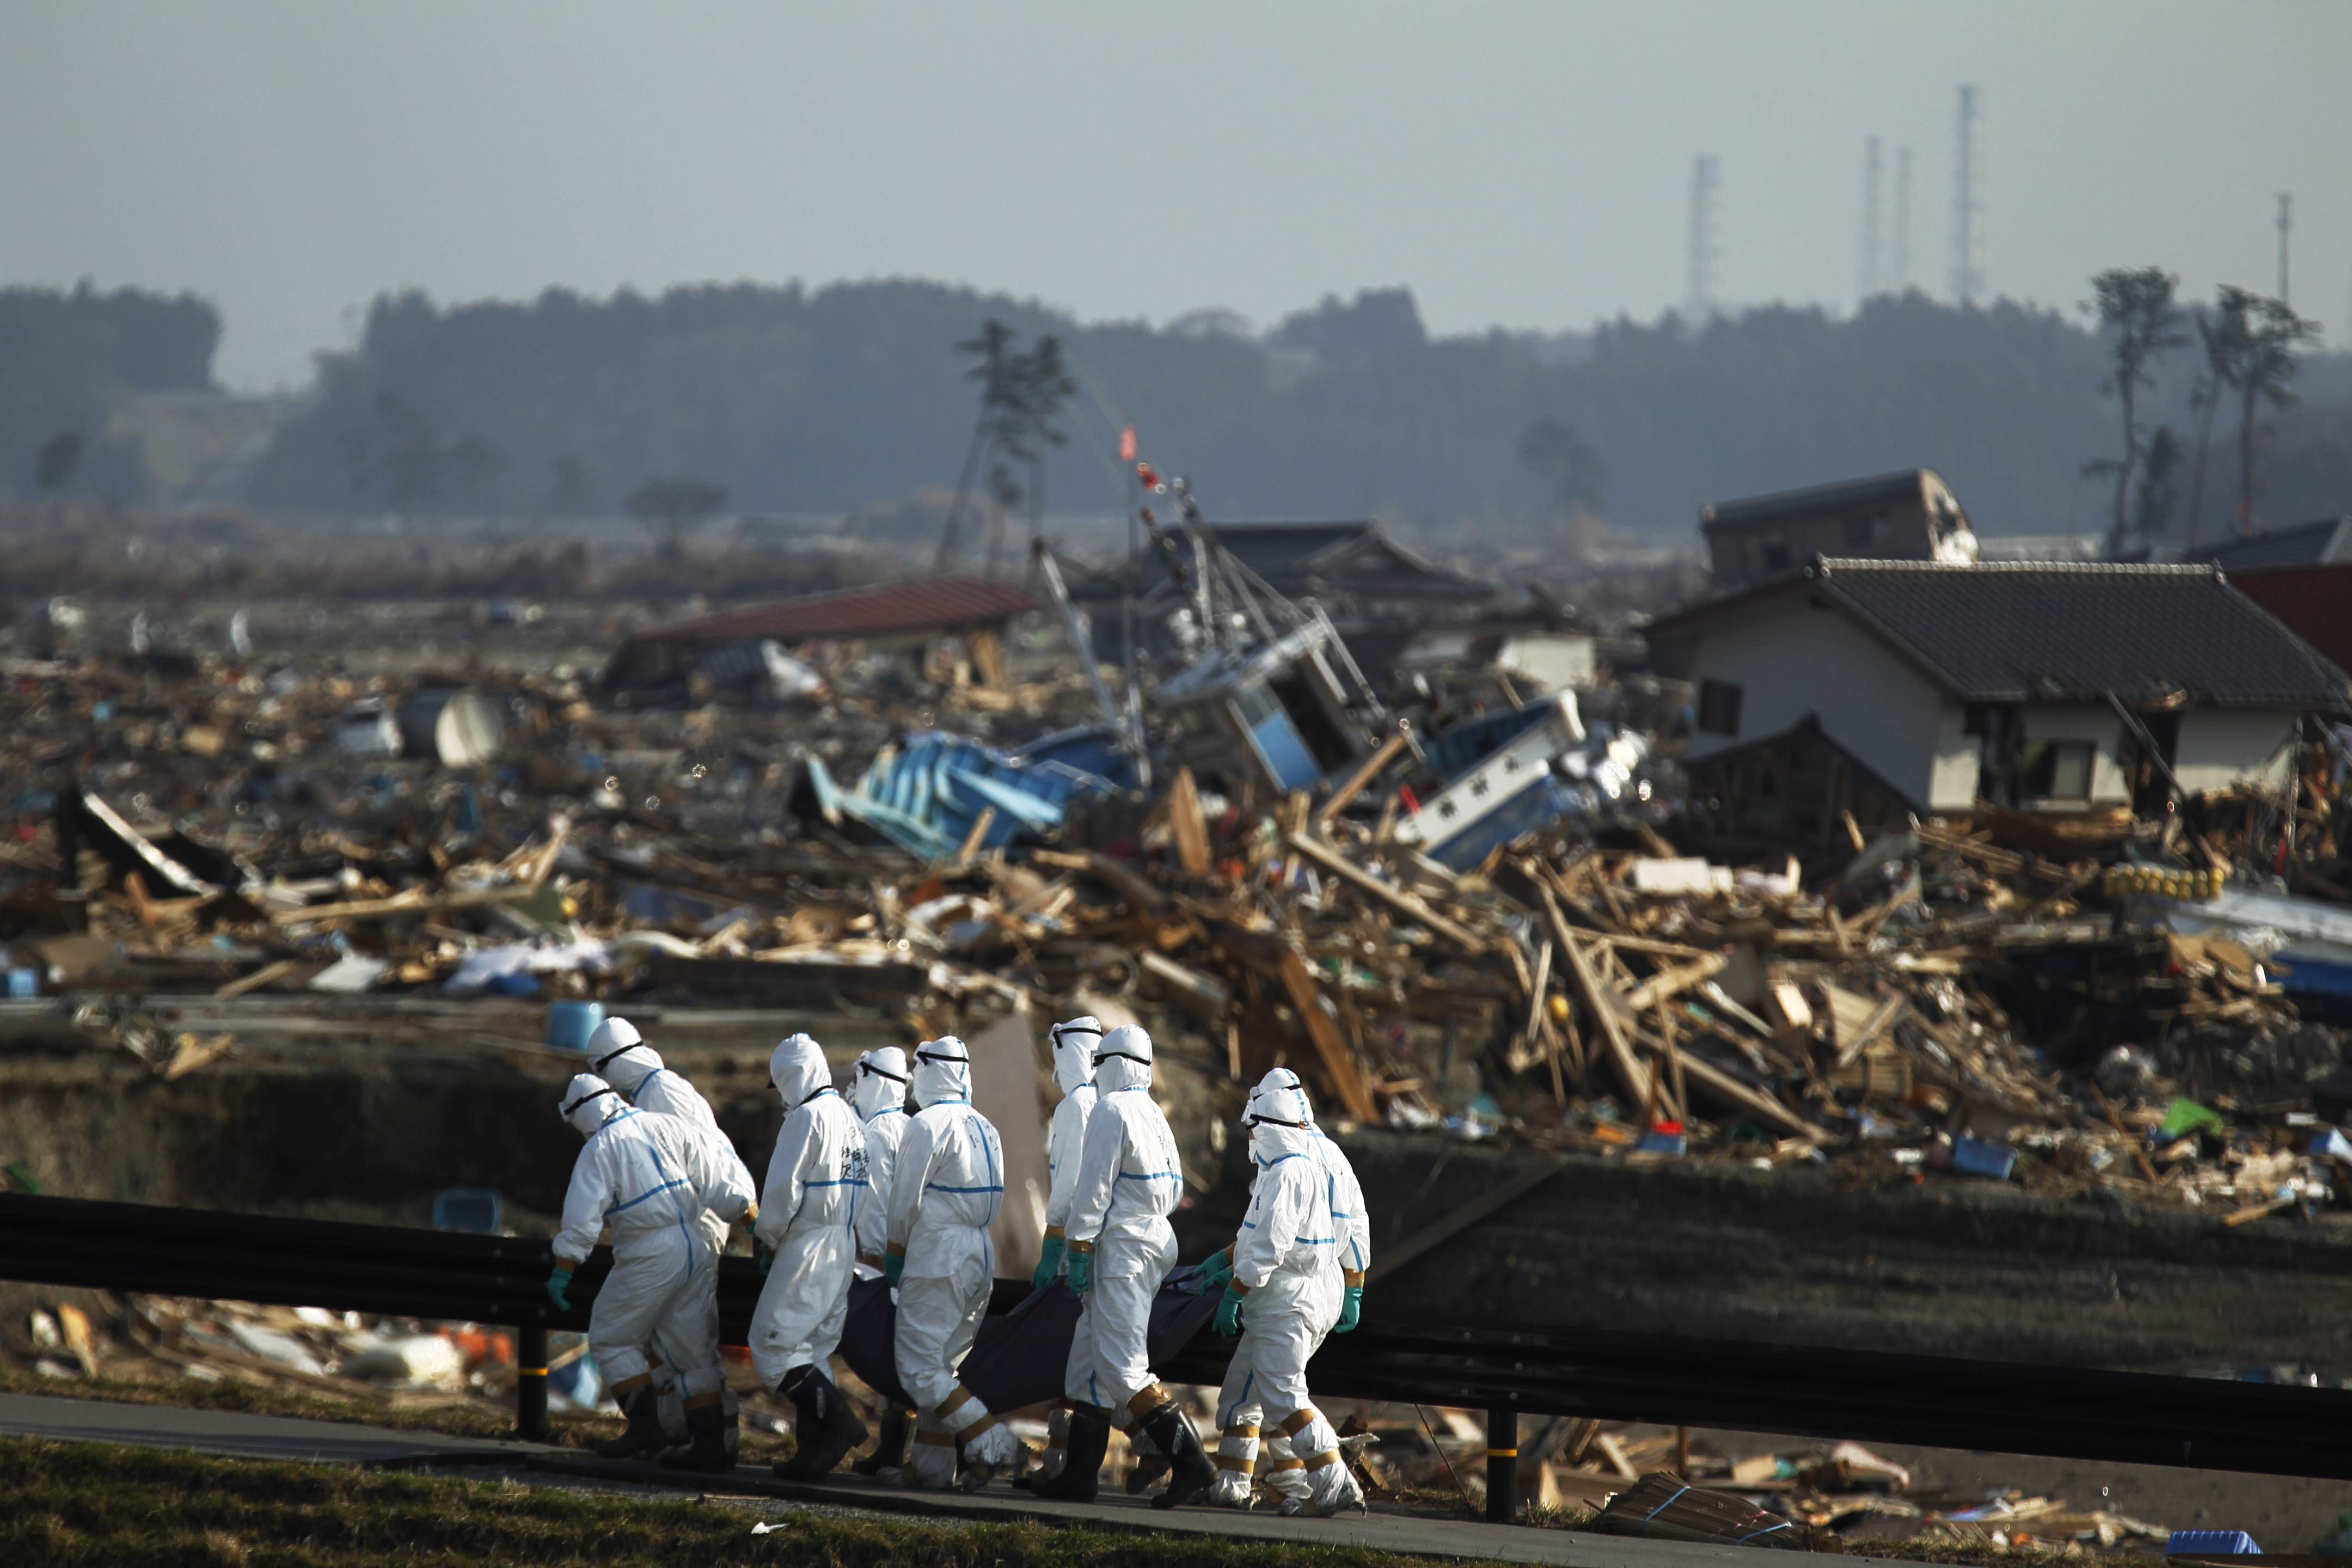 Авария на АЭС Фукусима-1. Авария на АЭС Фукусима-1 (Япония).. ЦУНАМИ В Японии 2011 Фукусима. Авария на АЭС Фукусима-1 (Япония, 2011).. 10 аварий на аэс